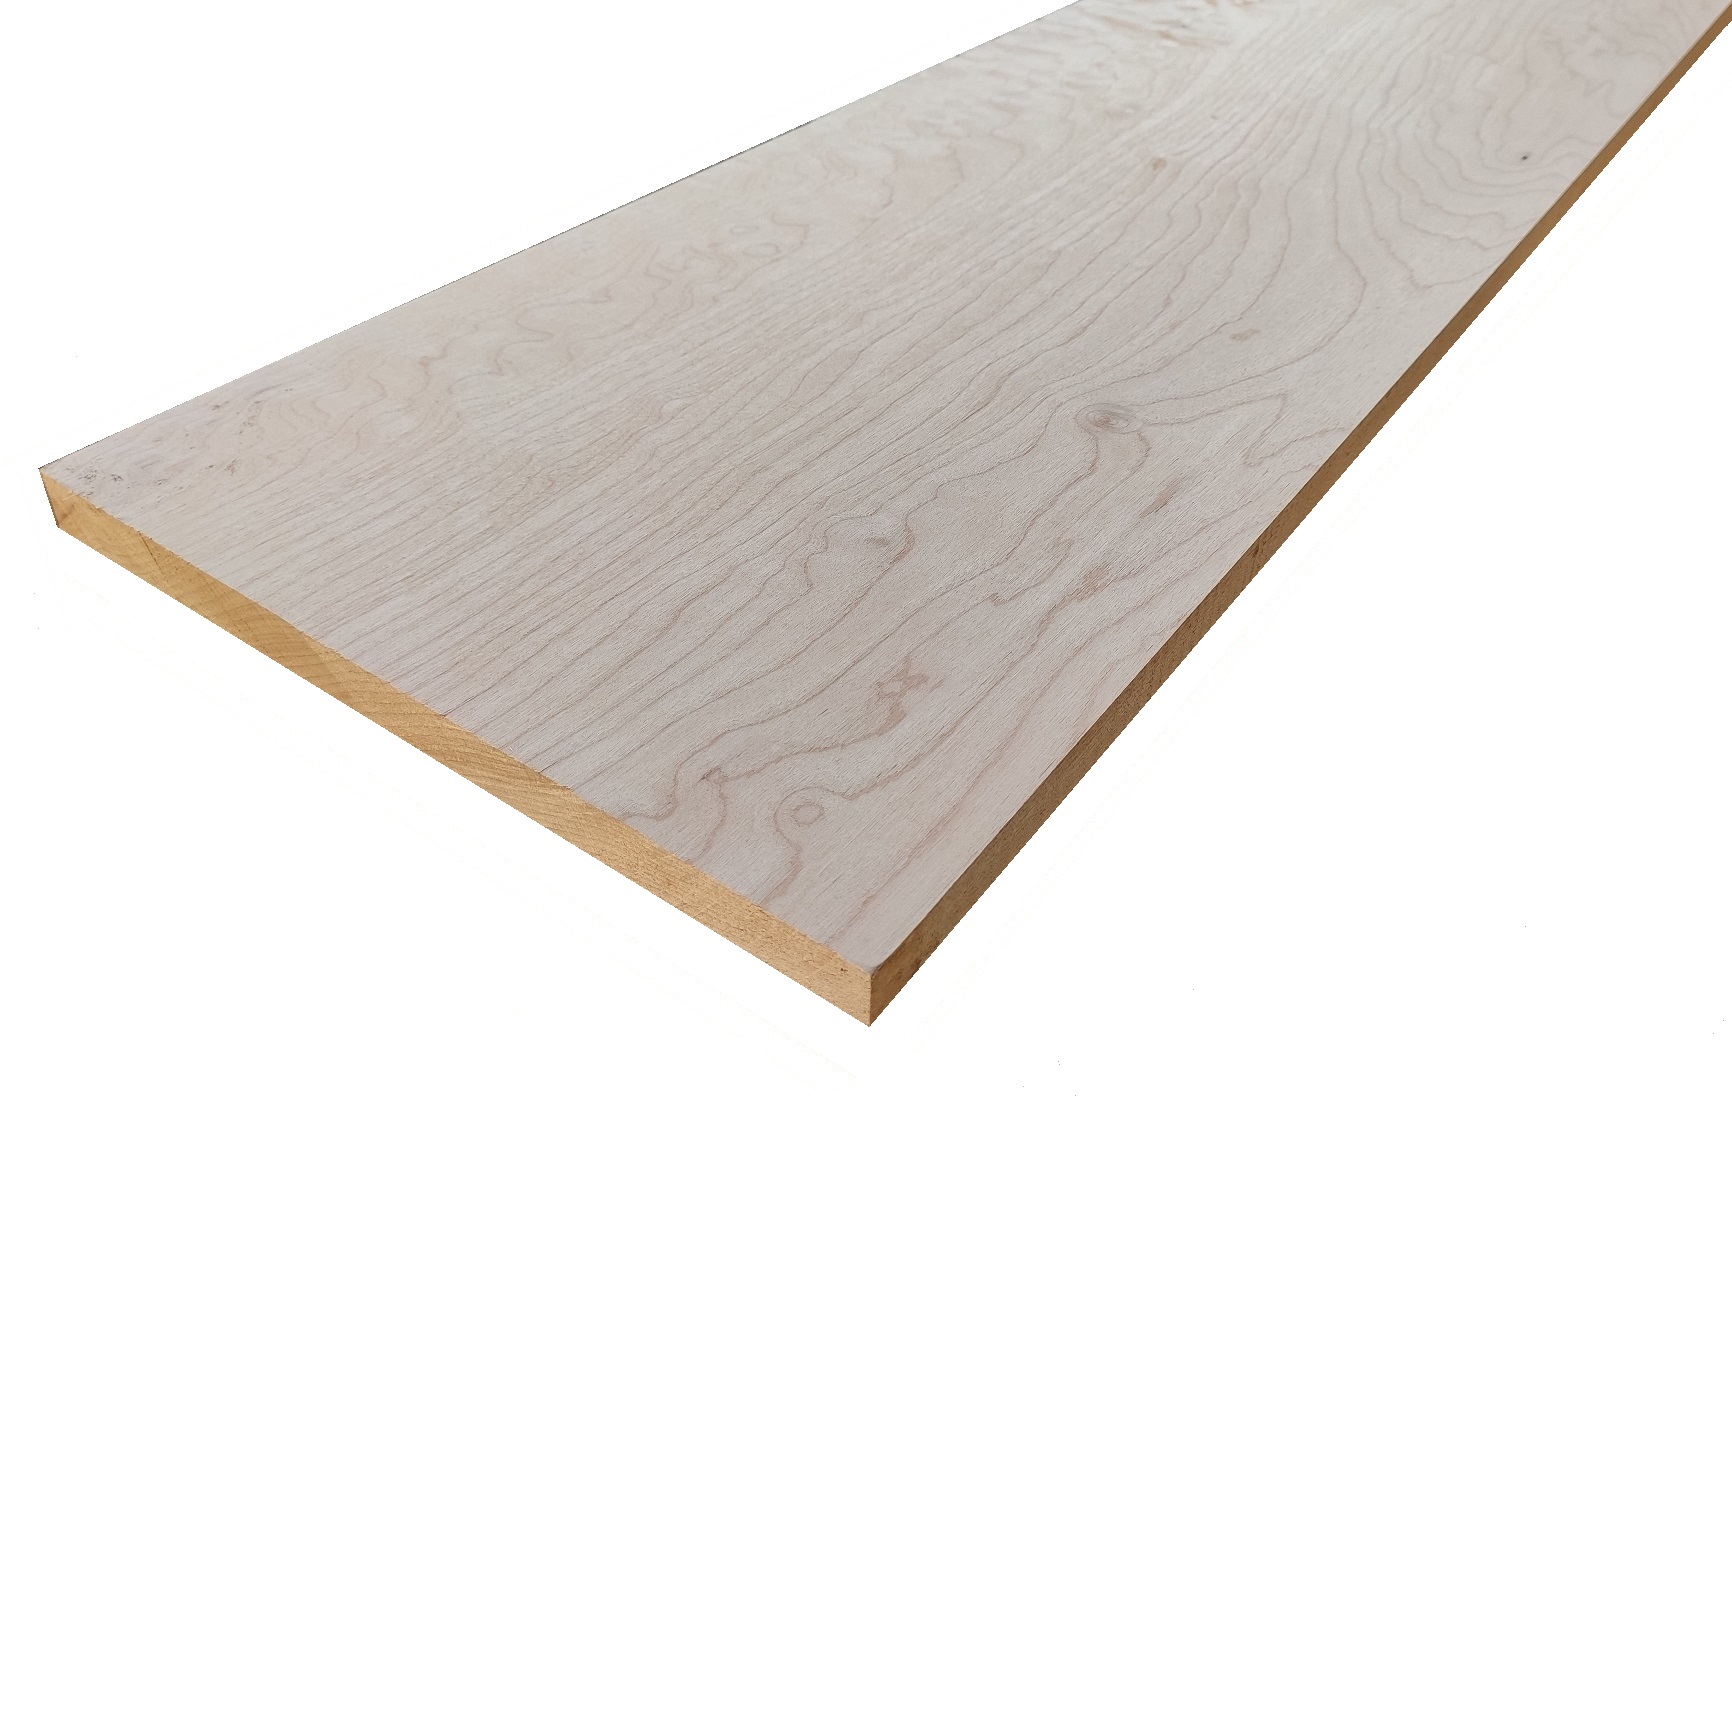 Tavola legno Acero Pacific Coast Maple Refilato Piallato mm 20 x 120 x 2400